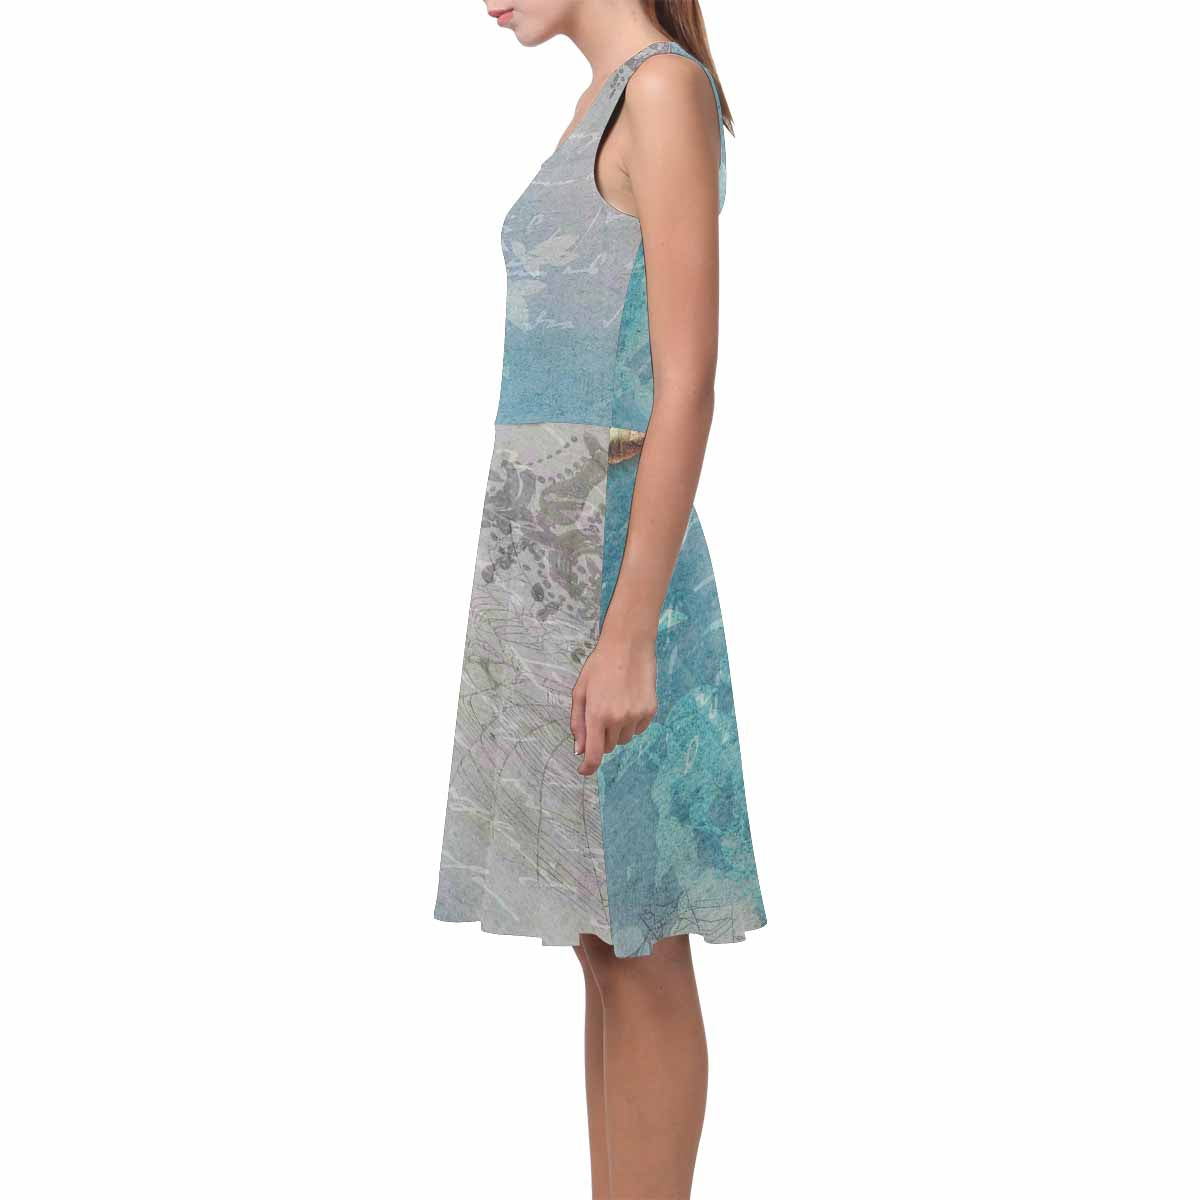 Antique General summer dress, MODEL 09534, design 17